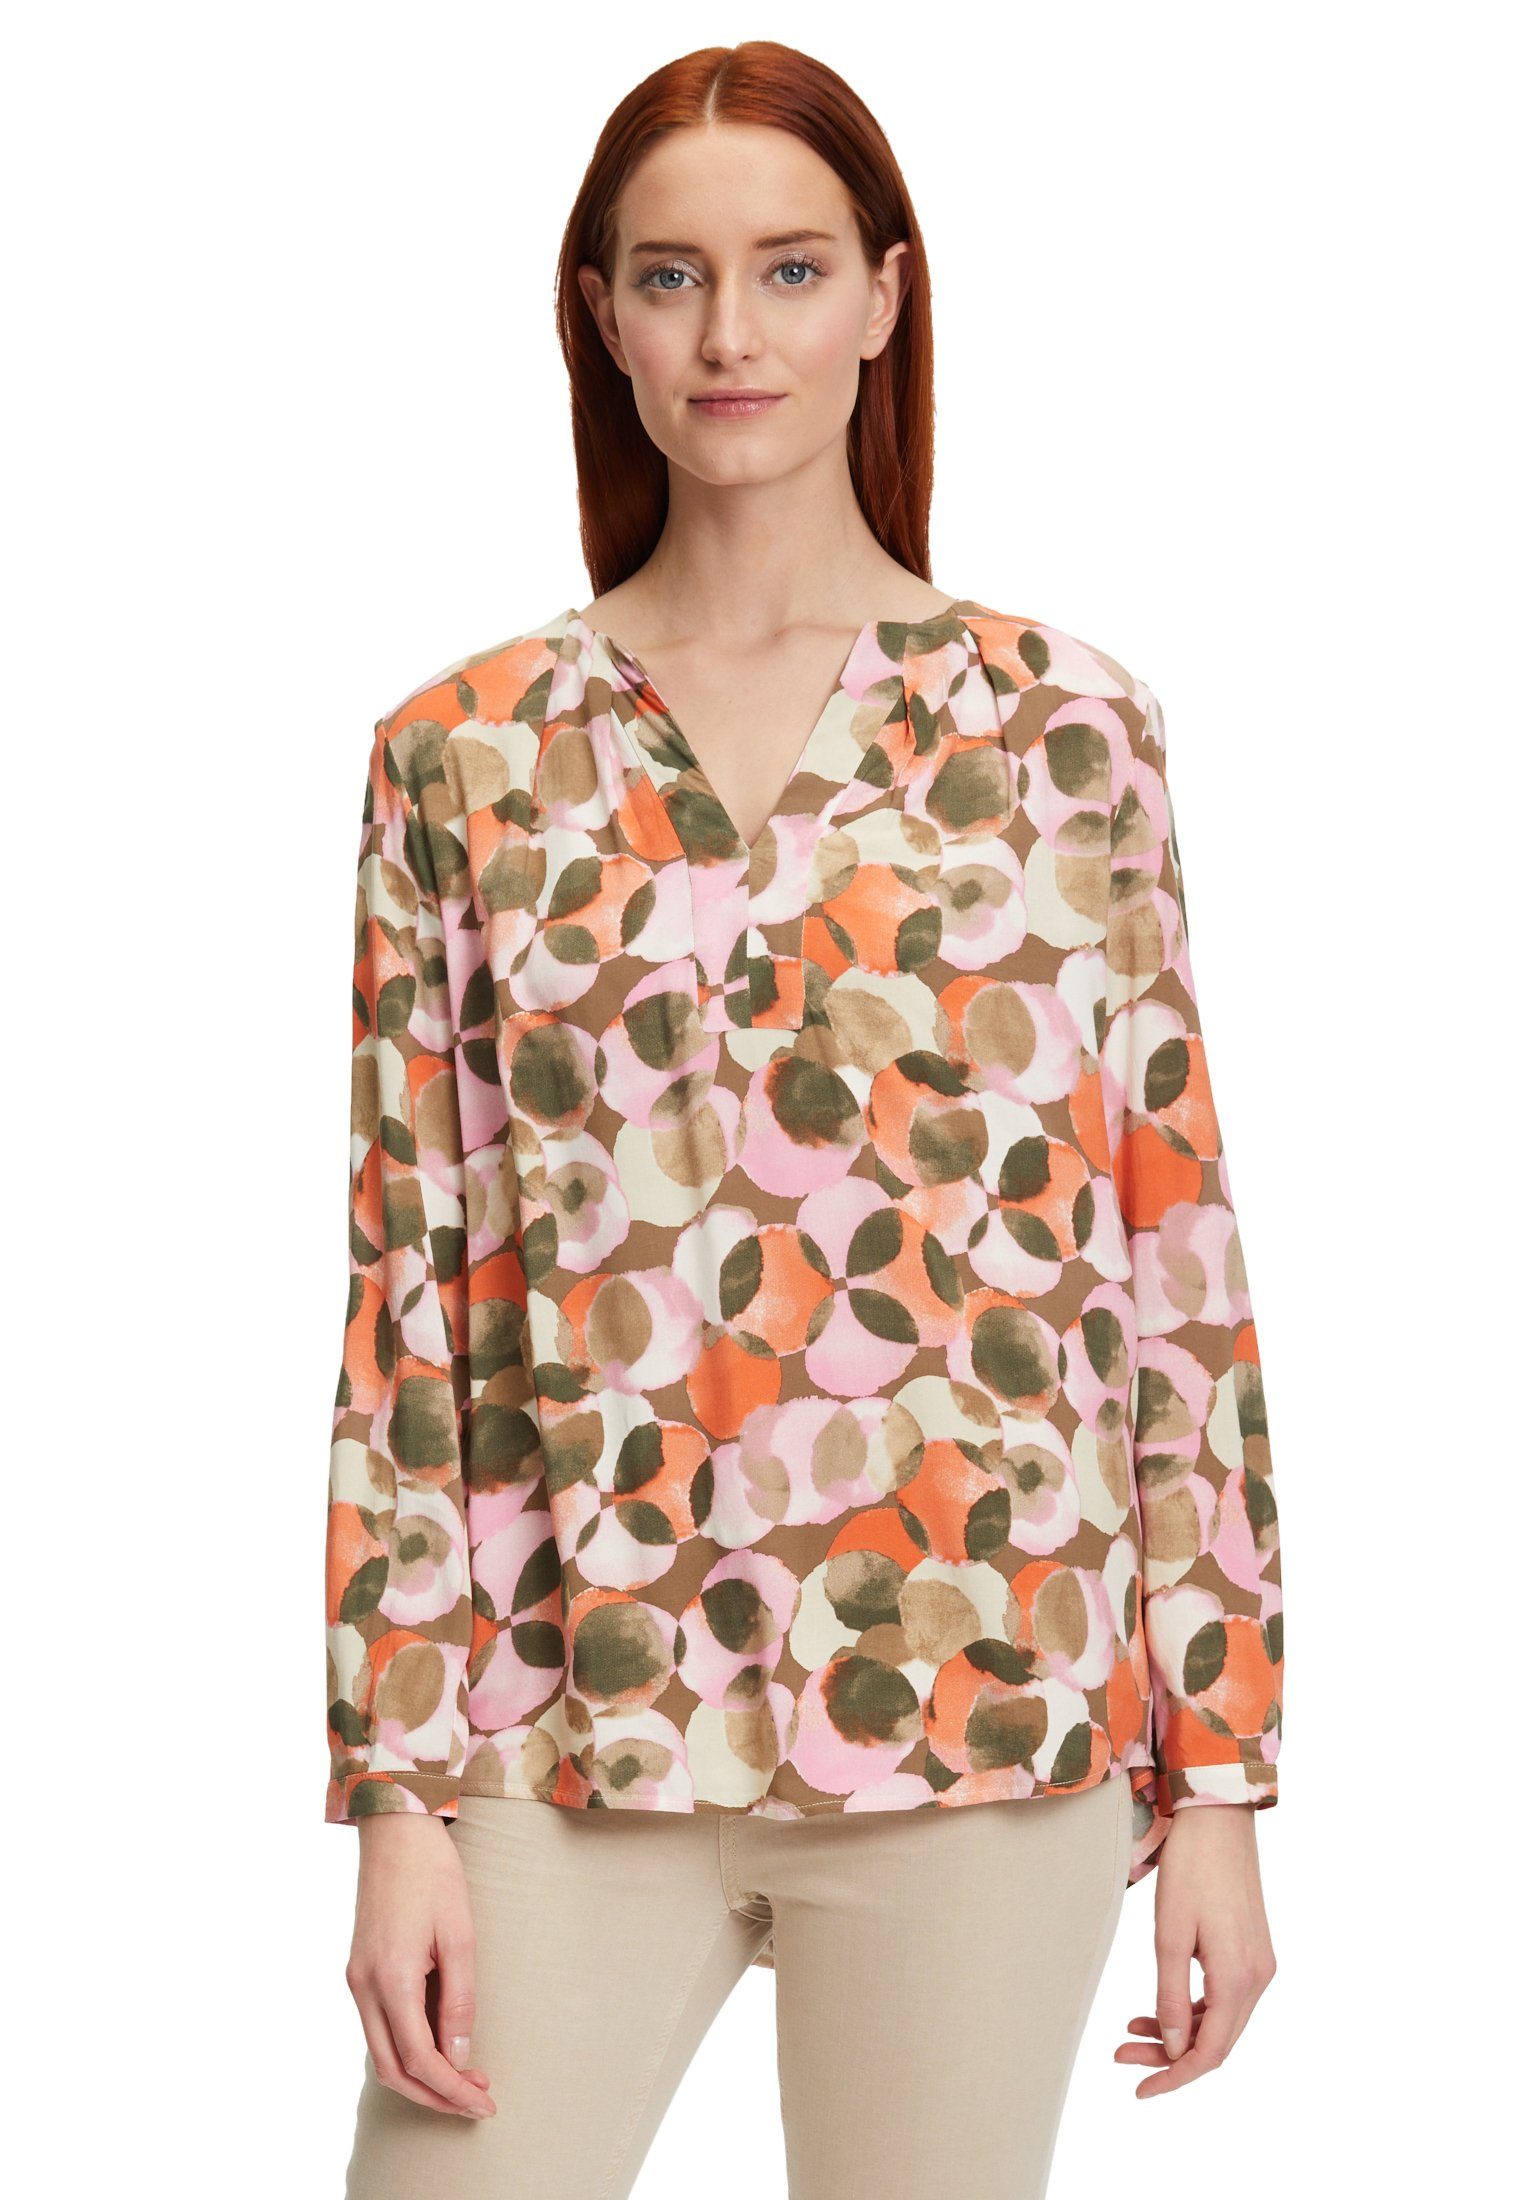 Gepunktete Blusen für Damen kaufen » Blusen mit Punkten | OTTO